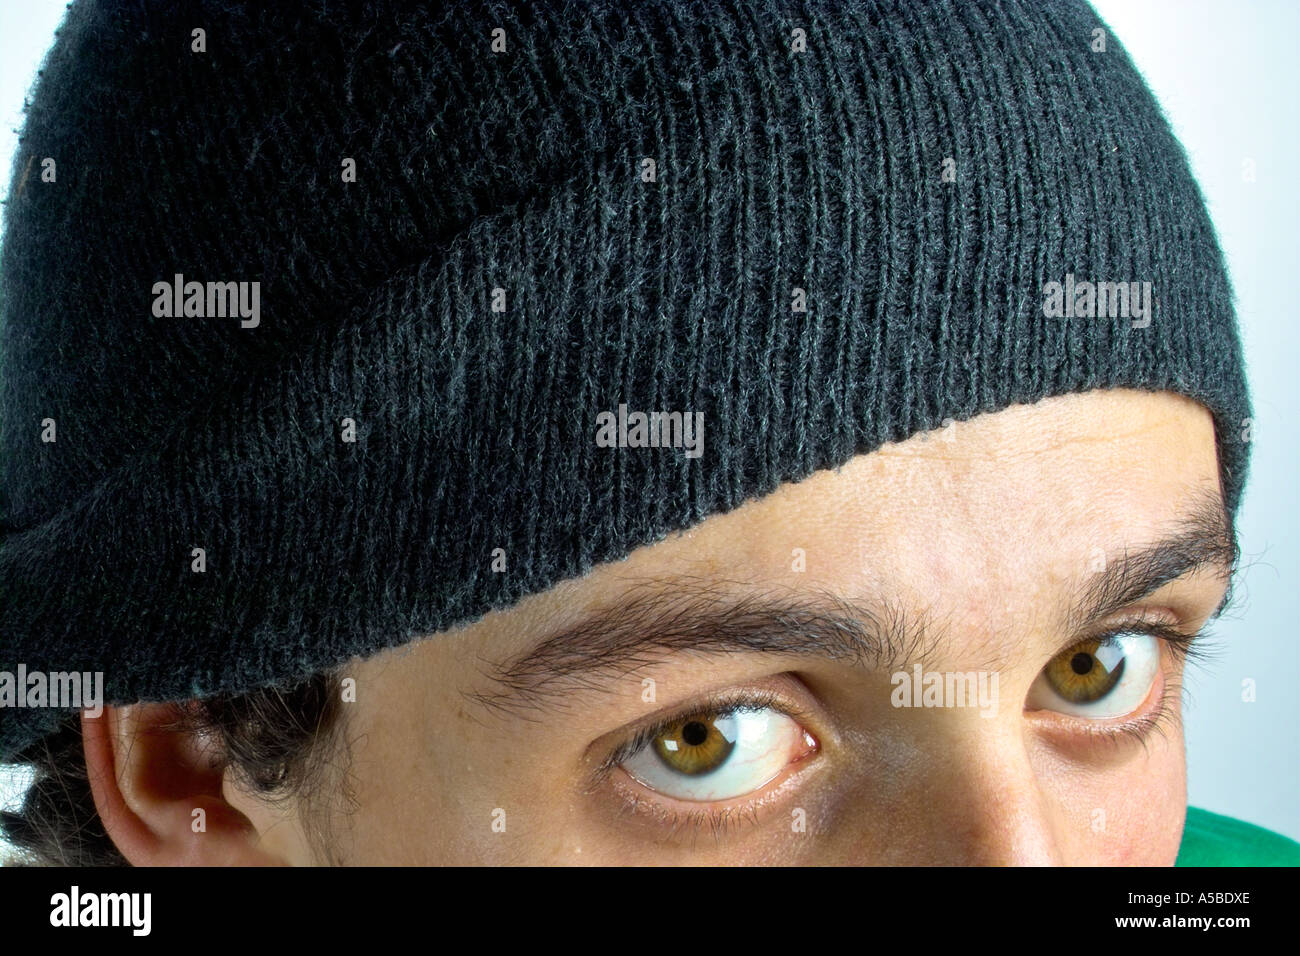 Les yeux et un woolly hat Banque D'Images